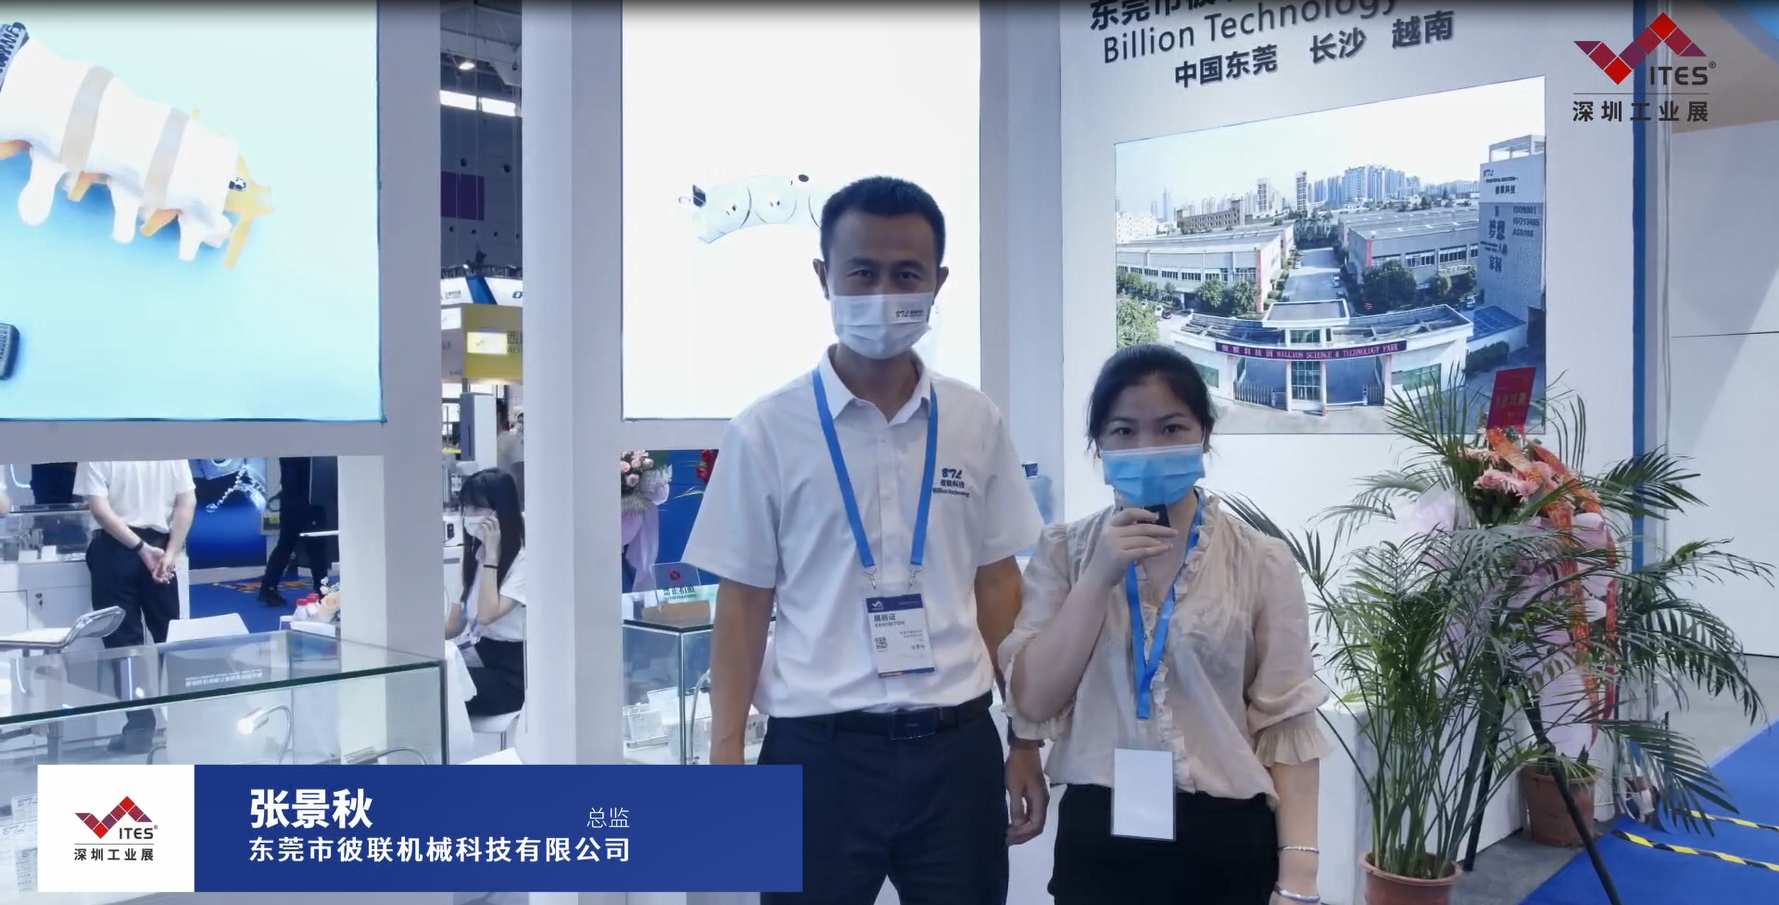 彼联机械在2022 ITES深圳工业展现场带来多行业、高精密加工案例，让我们一起洞悉工业技术新趋势。